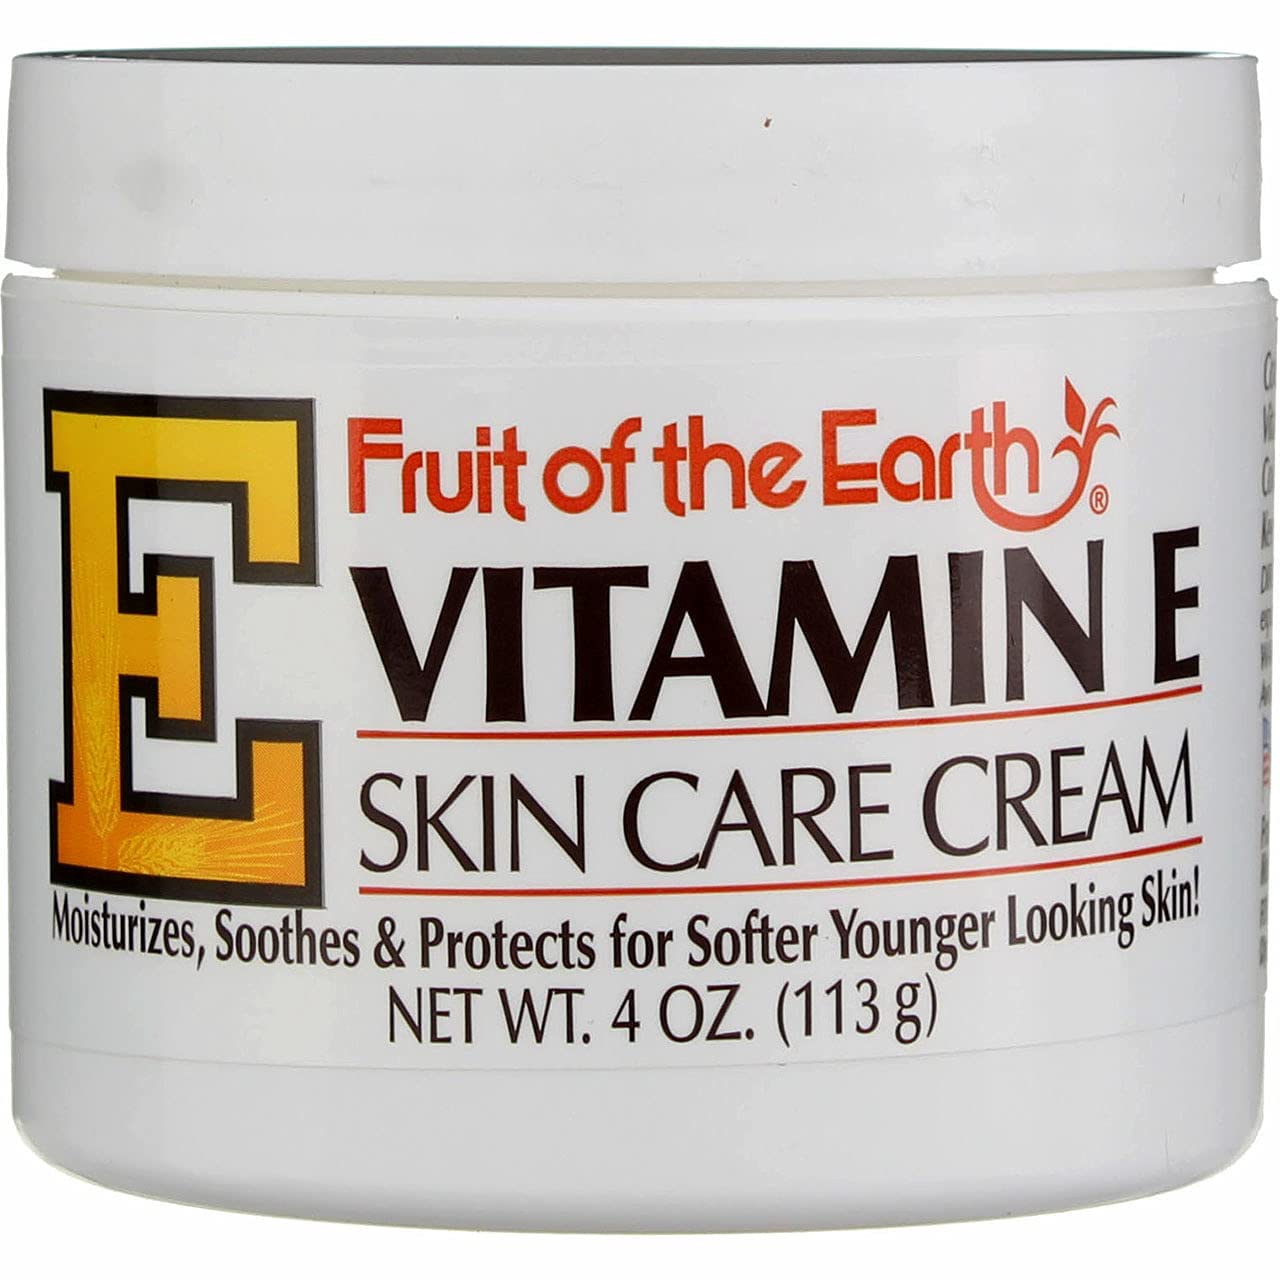 Lợi ích của mầm lúa mì trong Fruit of the Earth Vitamin E Skin Care Cream là gì?
